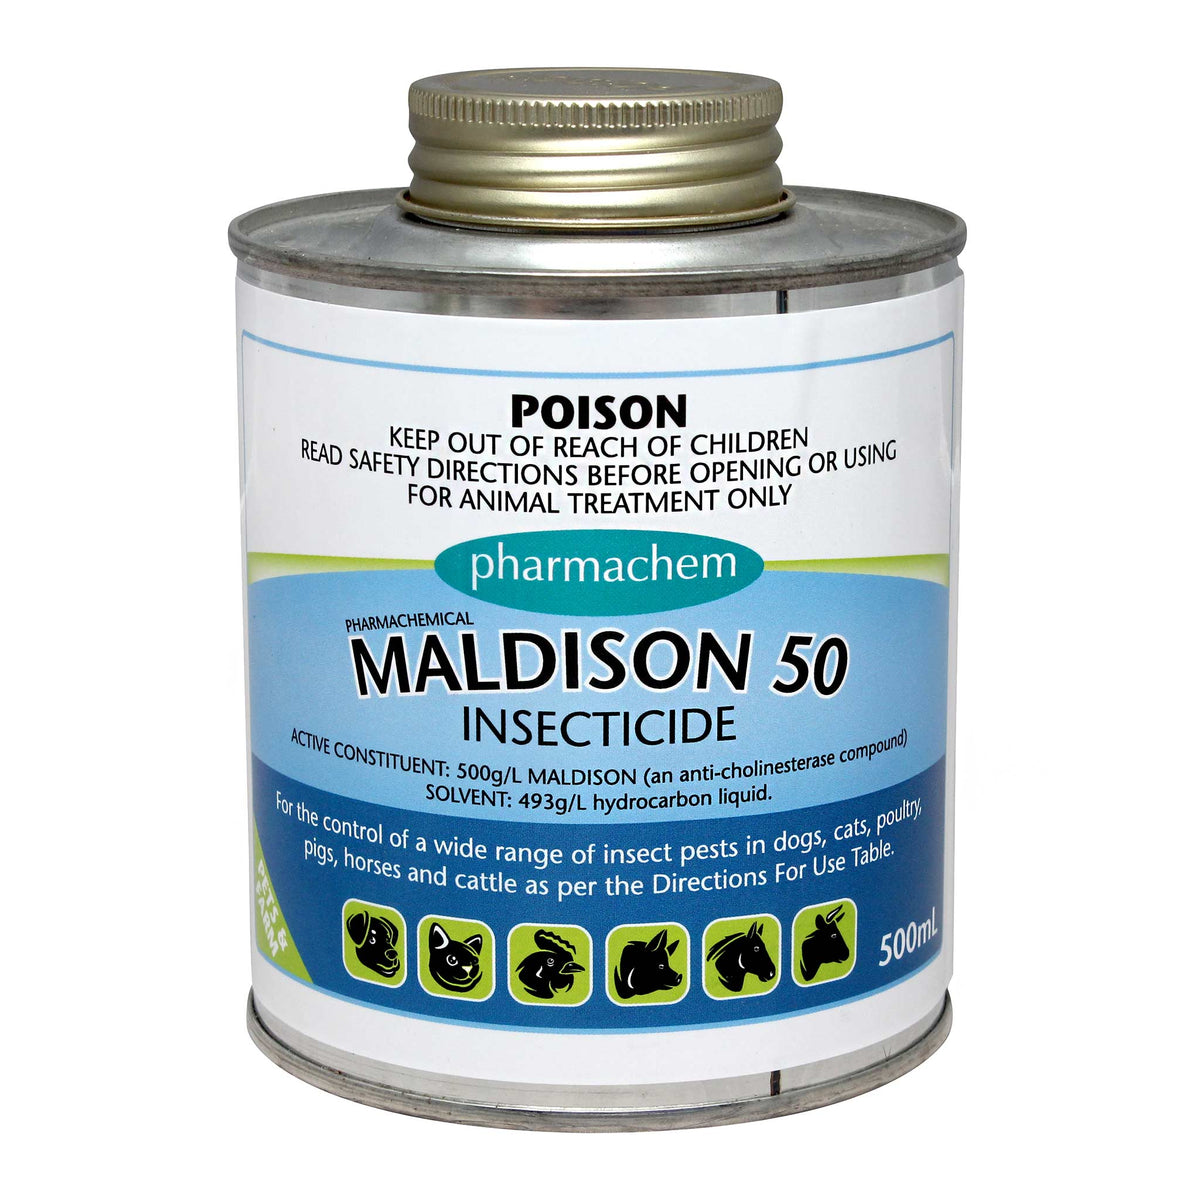 Maldison 50 Insecticide